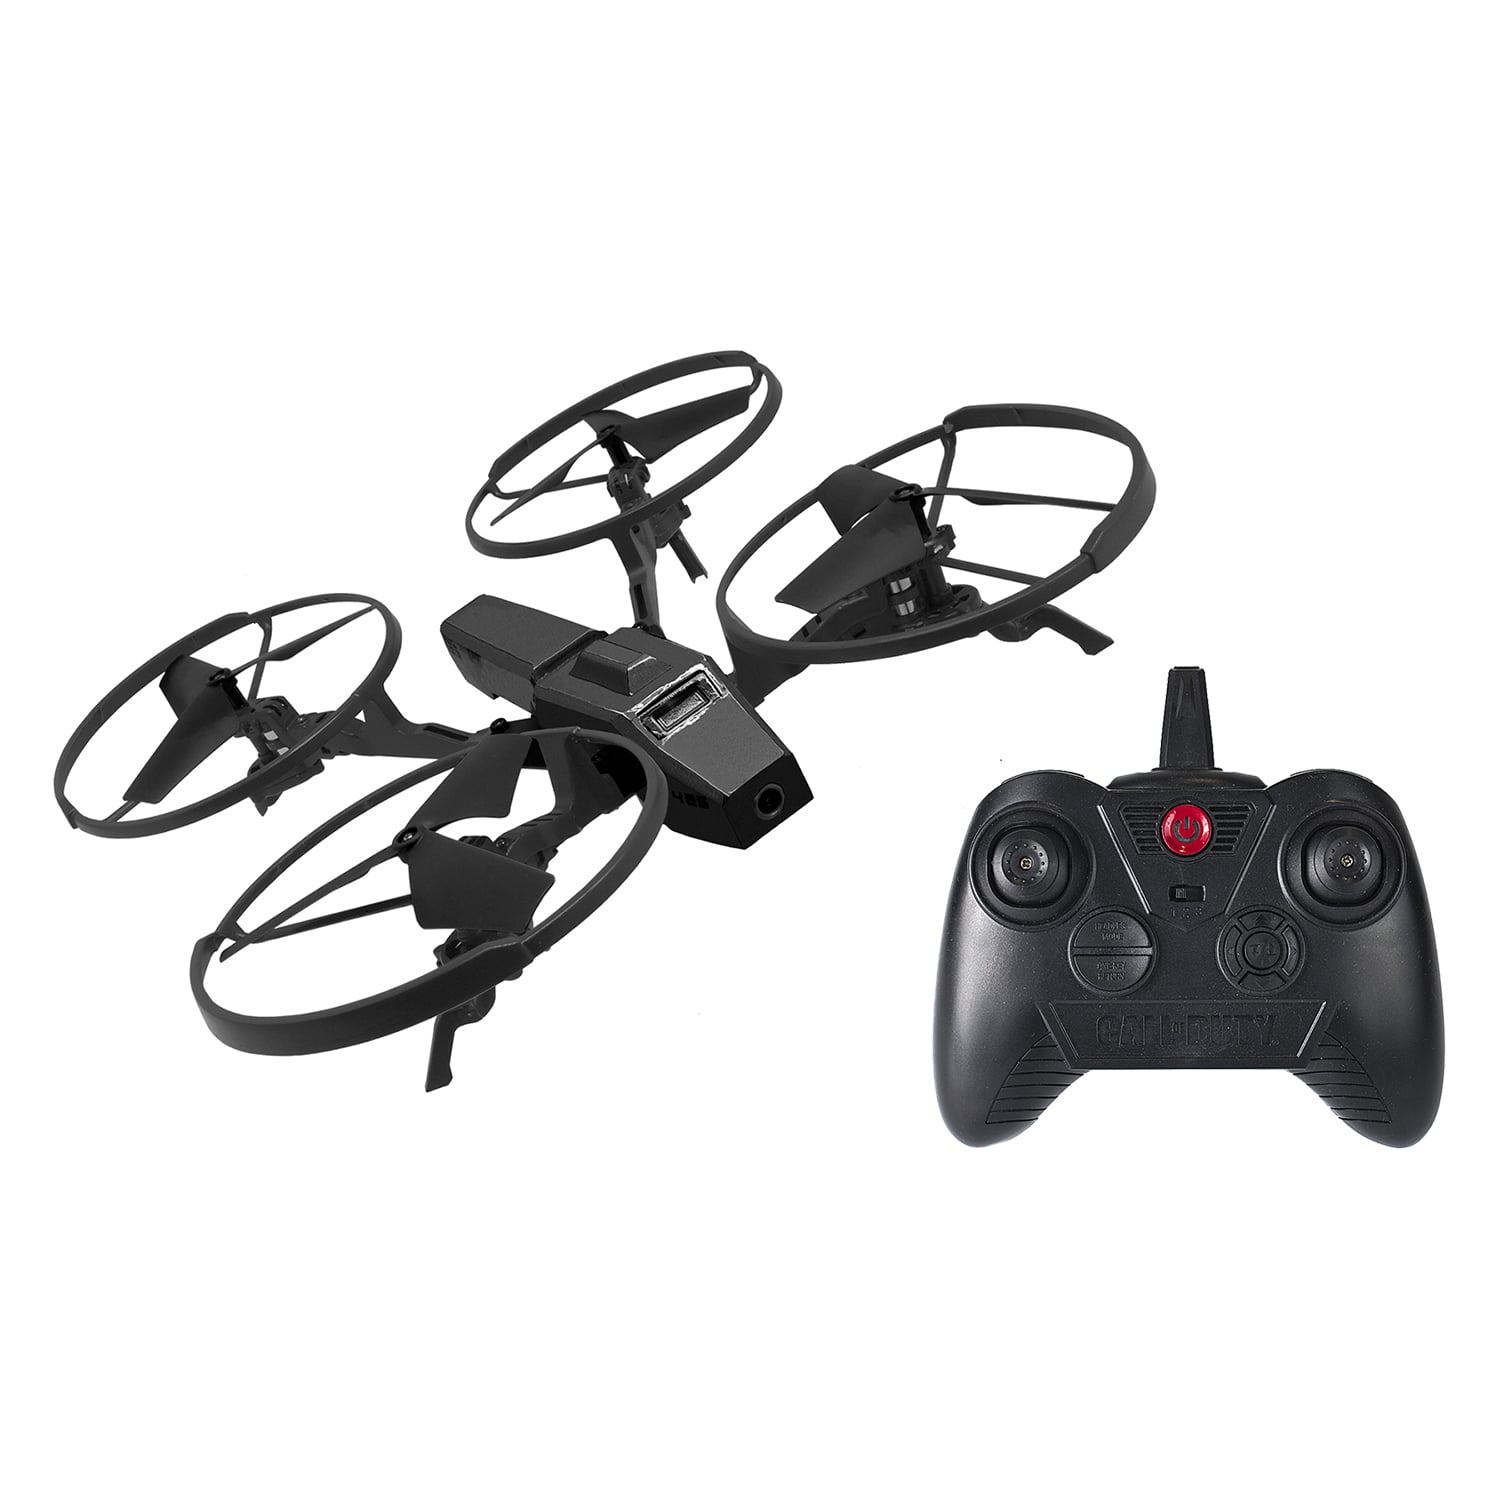 Call of Duty Drone HD CAMERA in Black Remote Control Dragonfire WiFi Drone 